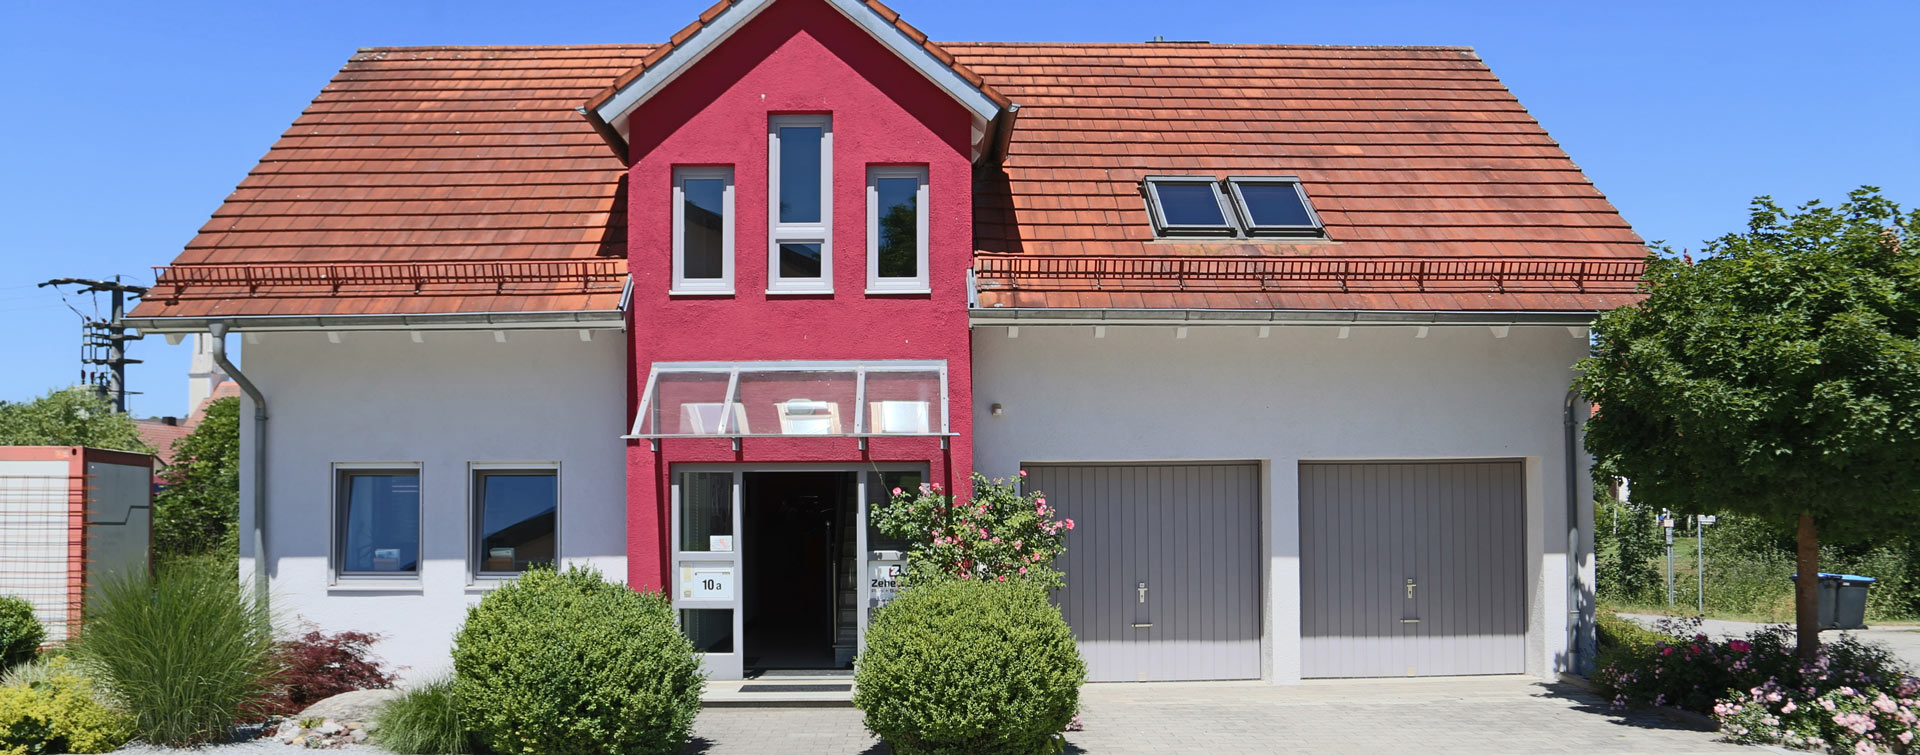 Planung und Bau von Häusern bei der Zehetner GmbH